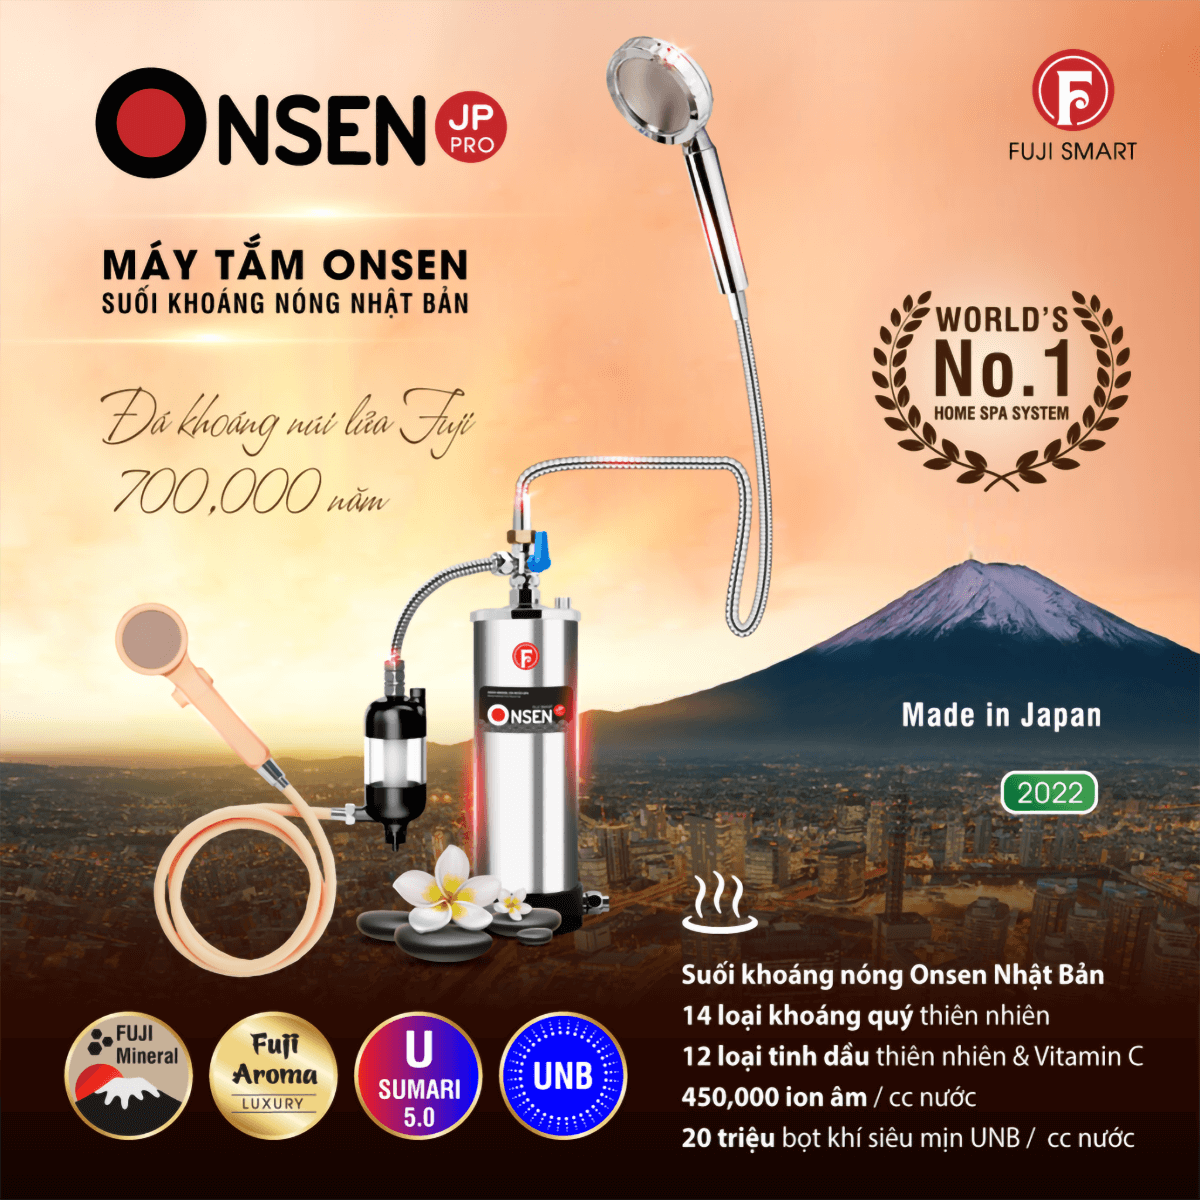 Máy tắm khoáng Fuji Smart Onsen JP Pro đem đến sự an tâm tối đa về chất lượng